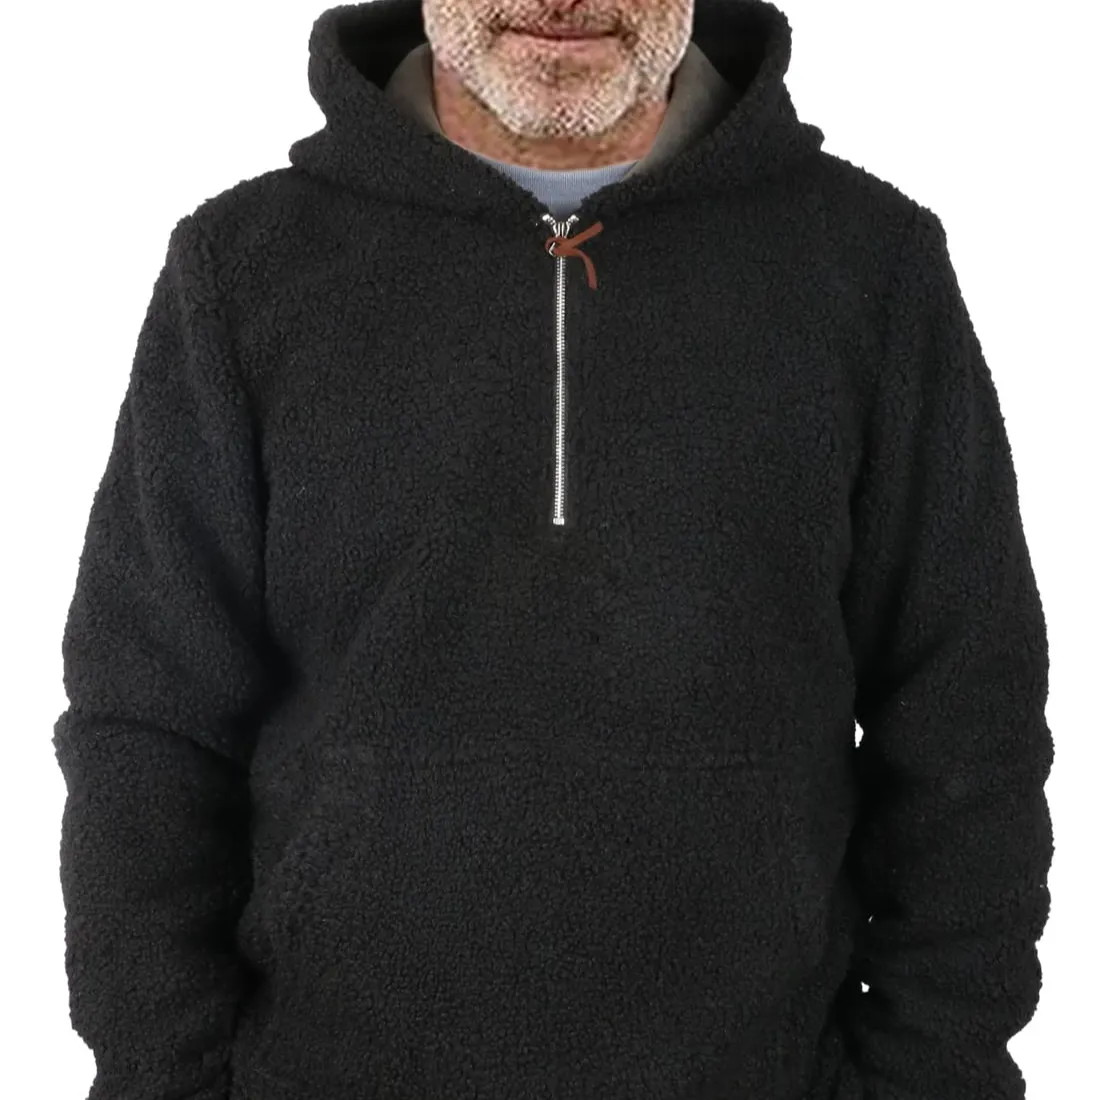 High Quality Winter Lambhair Sweatshirt 1/4 Zipper Printed Pullover Hoodies DIY OEM Customized Oversized Hoodies